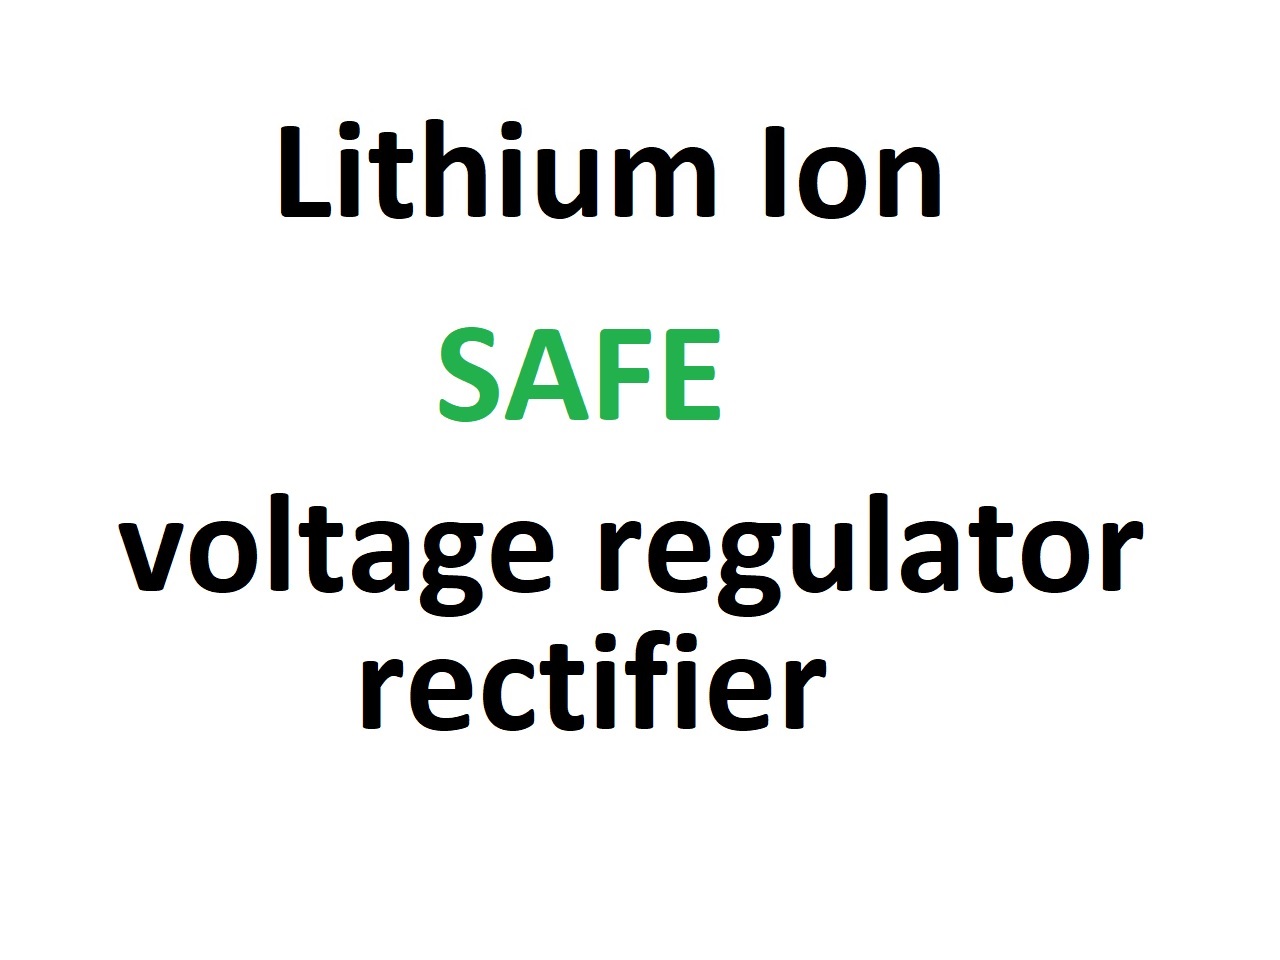 Redresseur de régulateur de tension, convient aux batteries lithium-ion